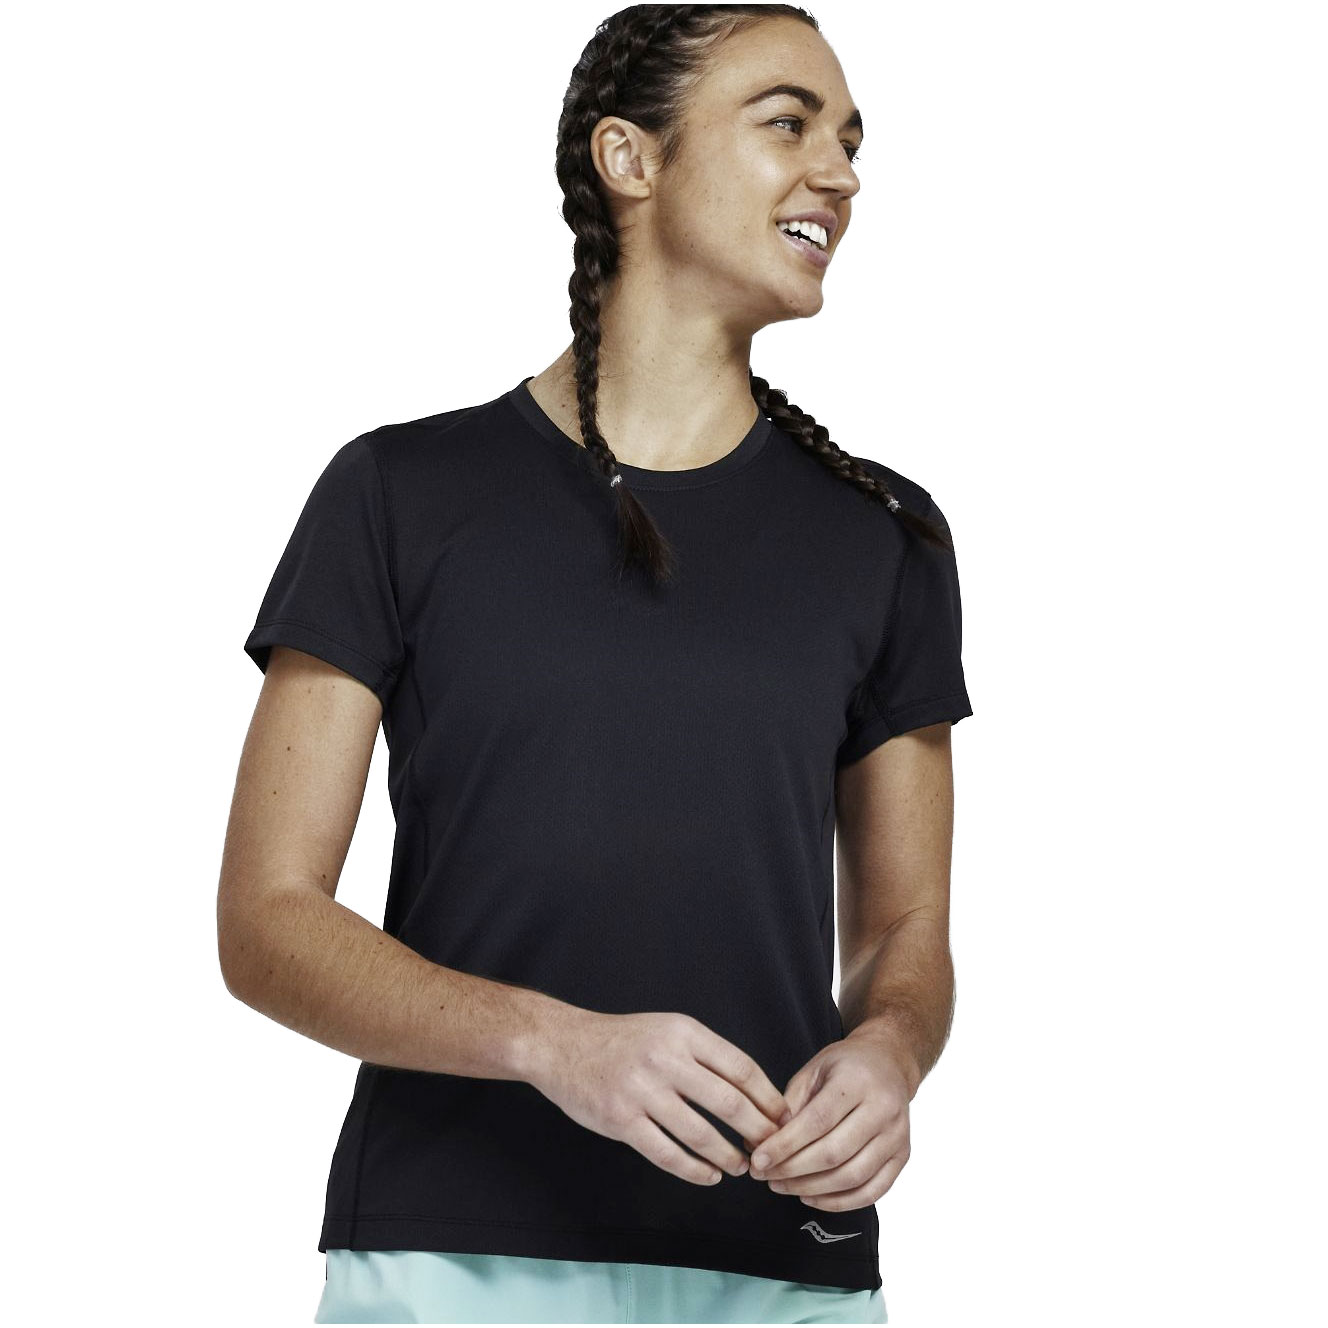 Produktbild von Saucony Stopwatch Damen Kurzarm-Shirt - schwarz